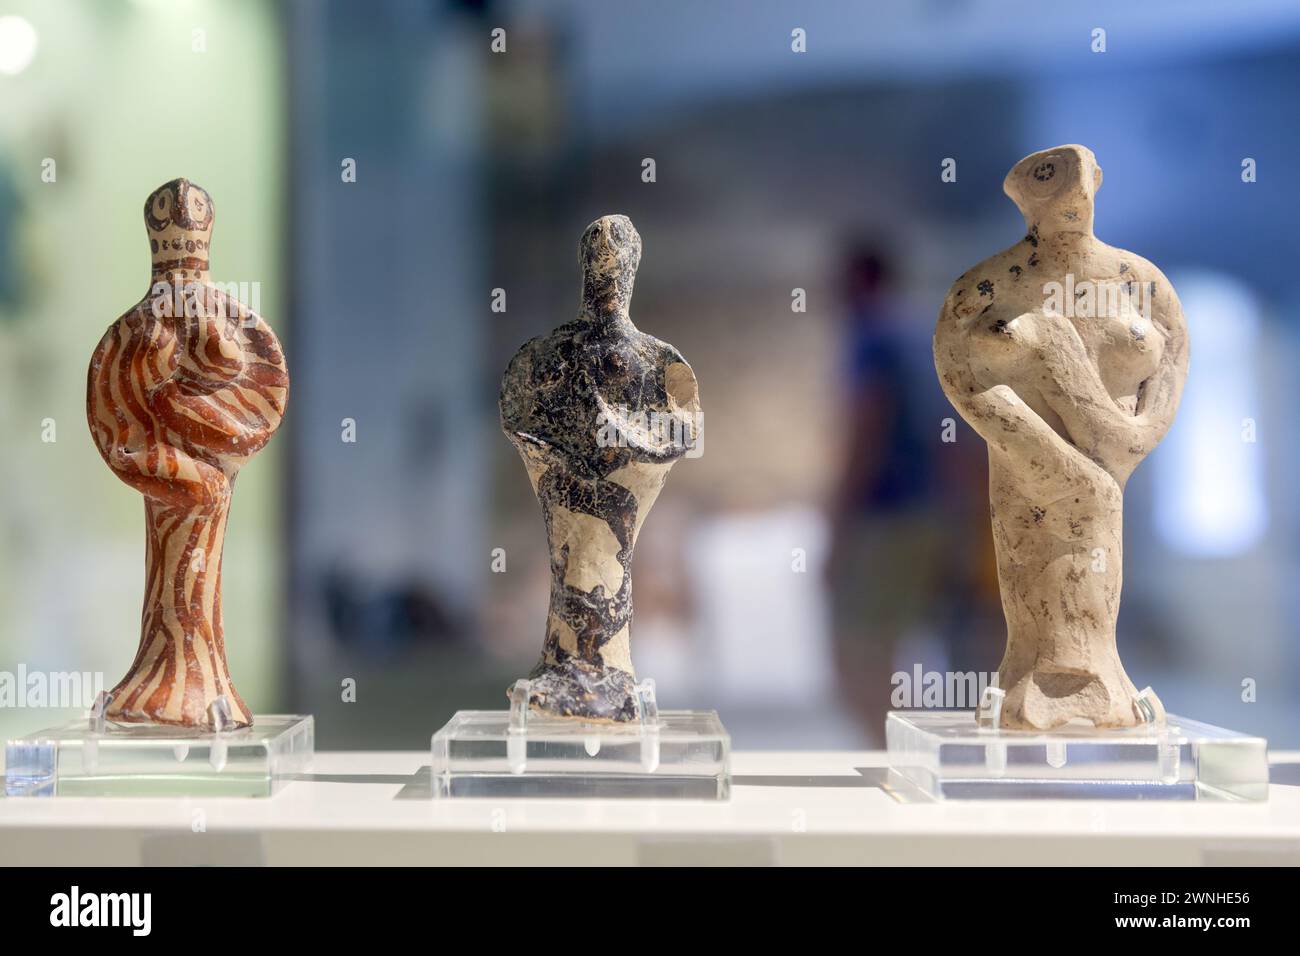 Kykladische Tonfiguren, ein schönes Beispiel für die antike griechische Kultur, wie sie im Archäologischen Museum von Nafplio, Griechenland, Europa, ausgestellt wurden. Stockfoto